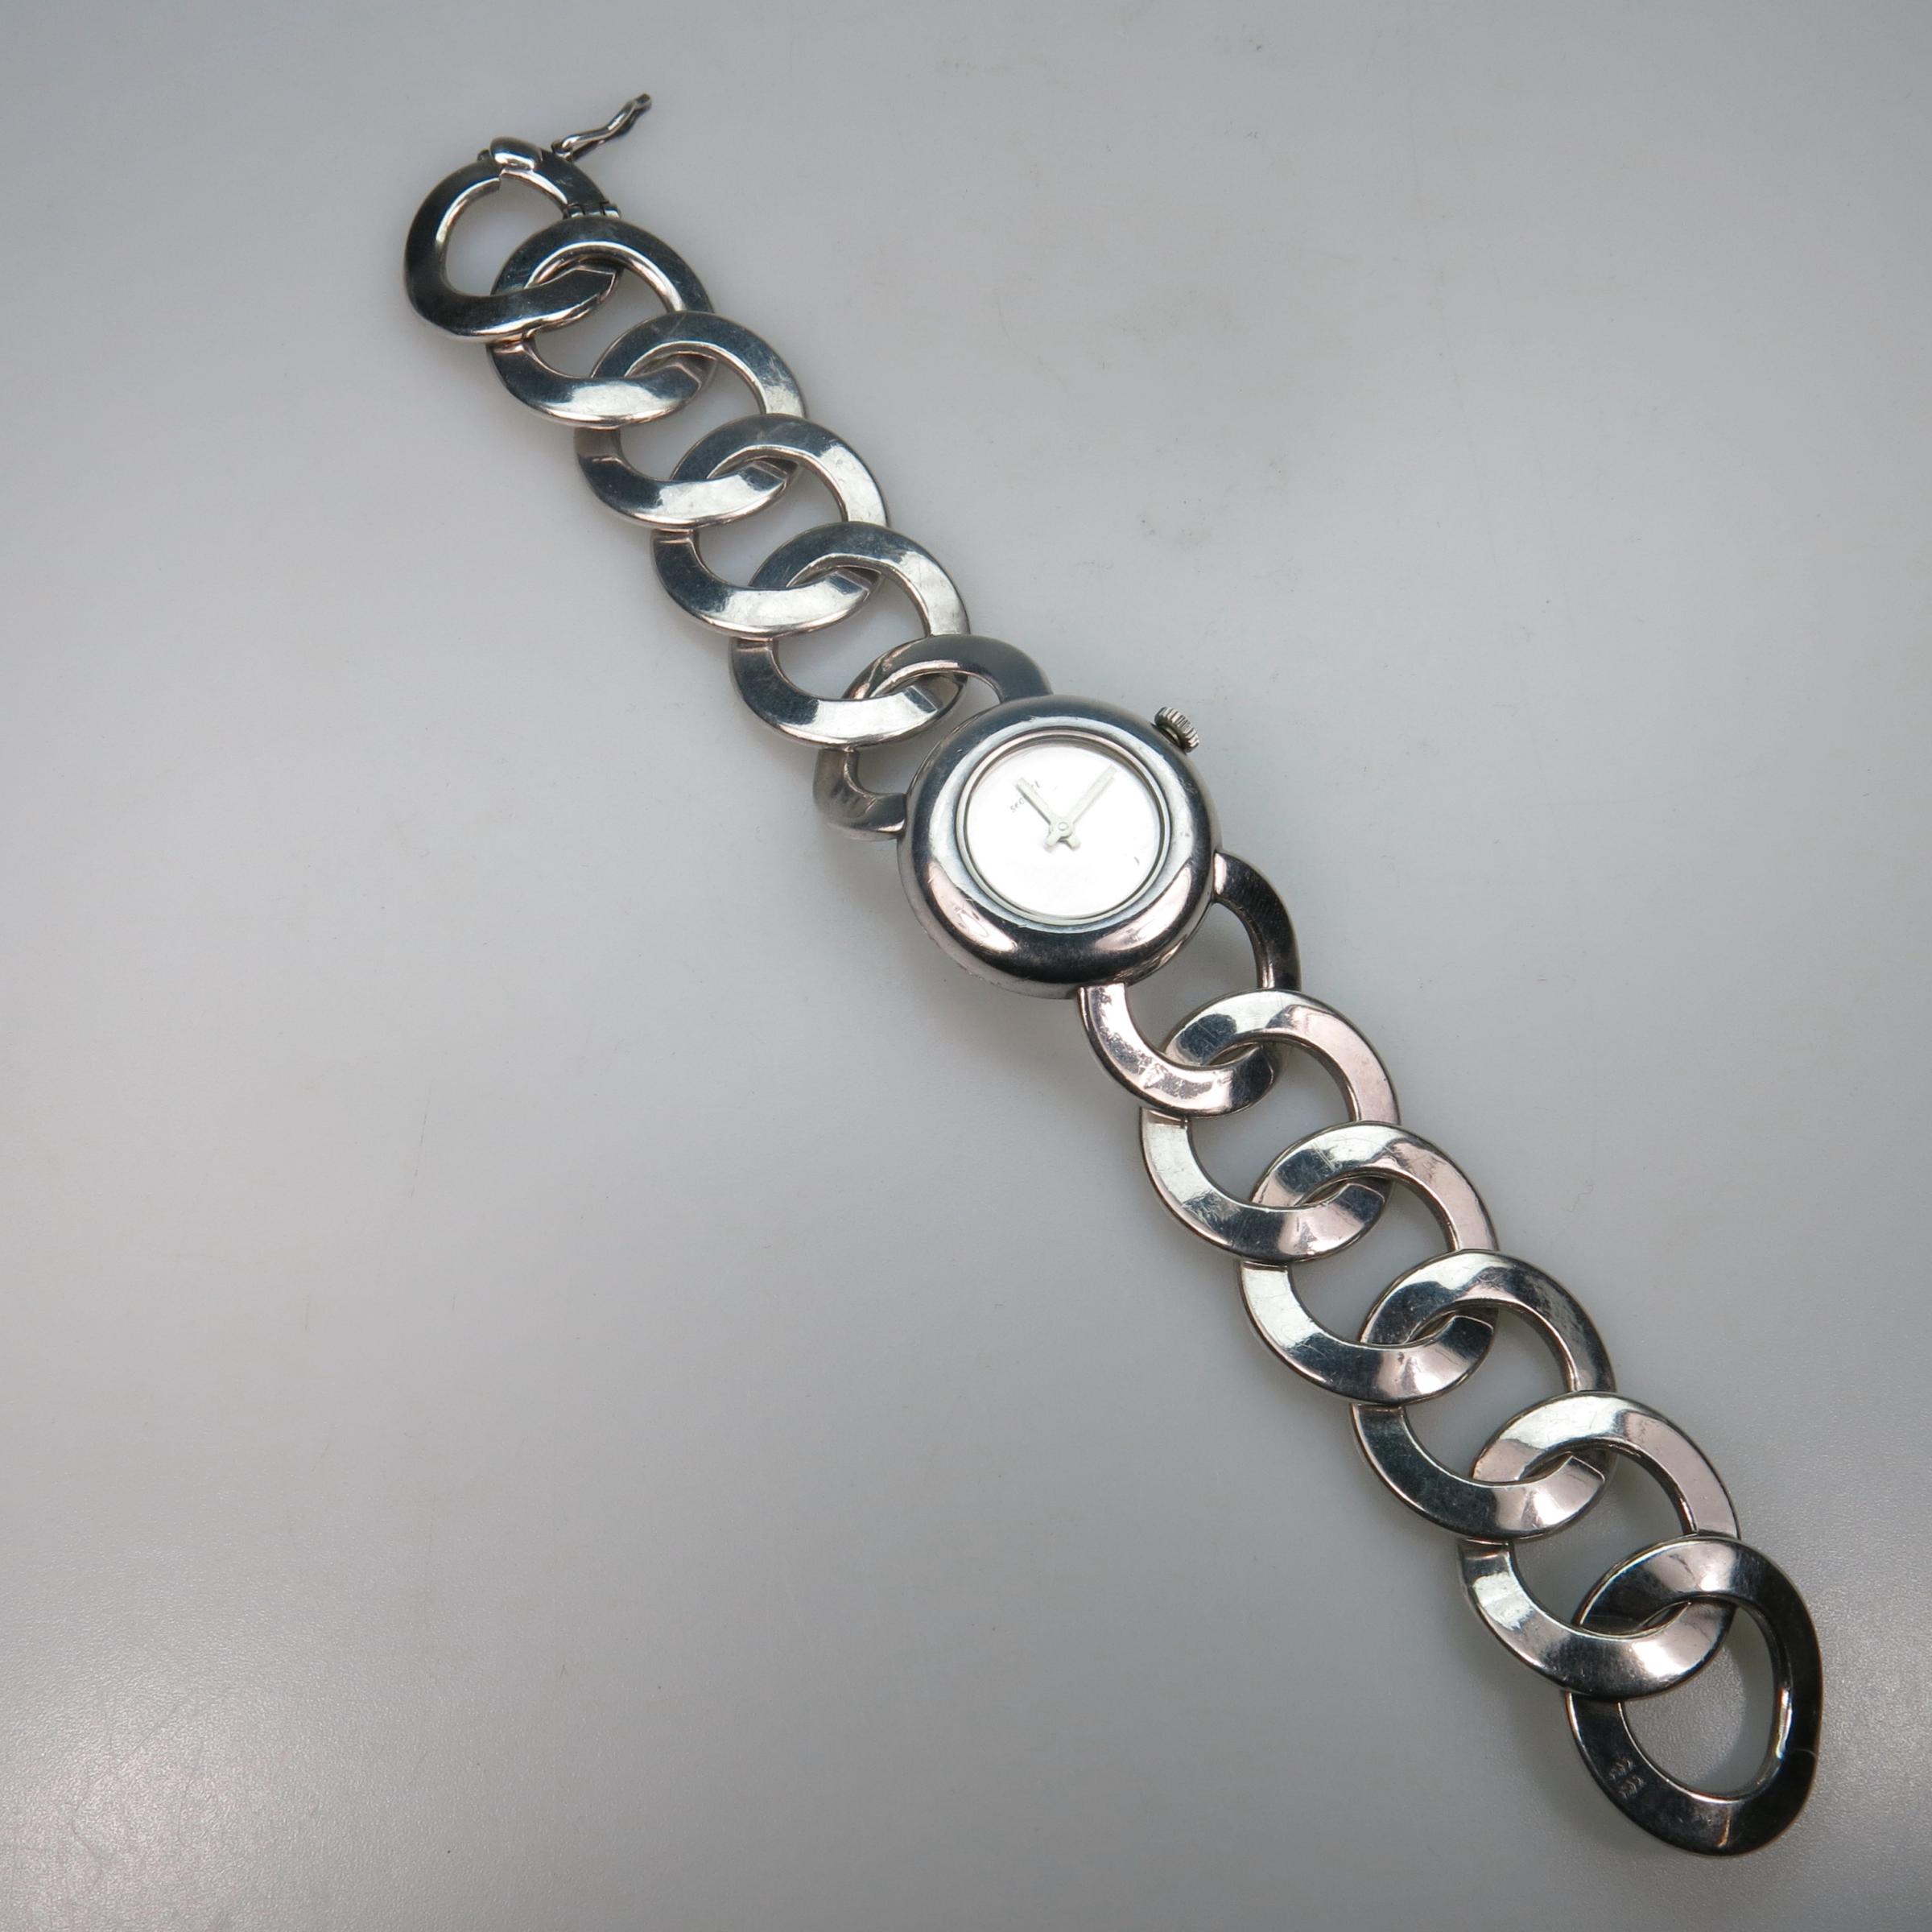 Lady's Secrett Wristwatch